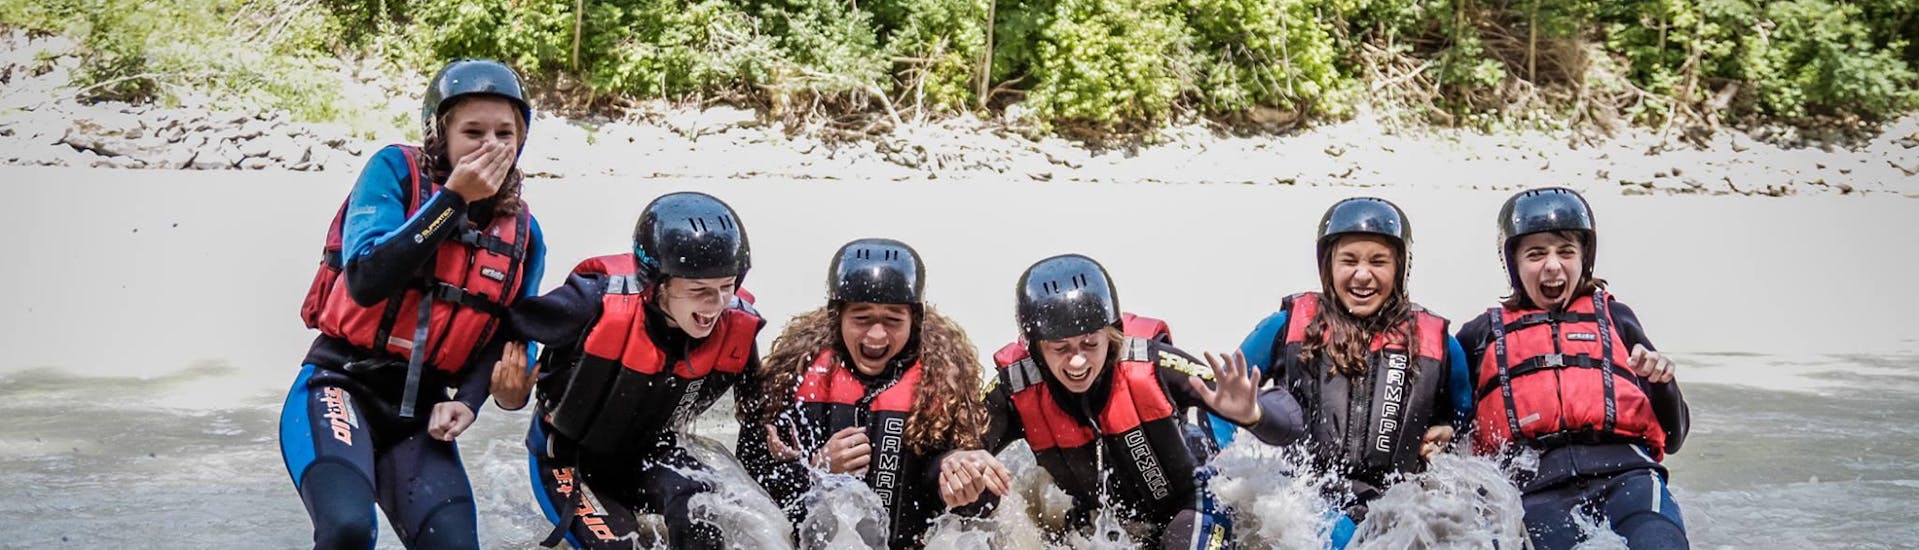 Een groep deelnemers valt in het water tijdens het raften op de Inn River - Perfecte start met H2O Adventure Ried.